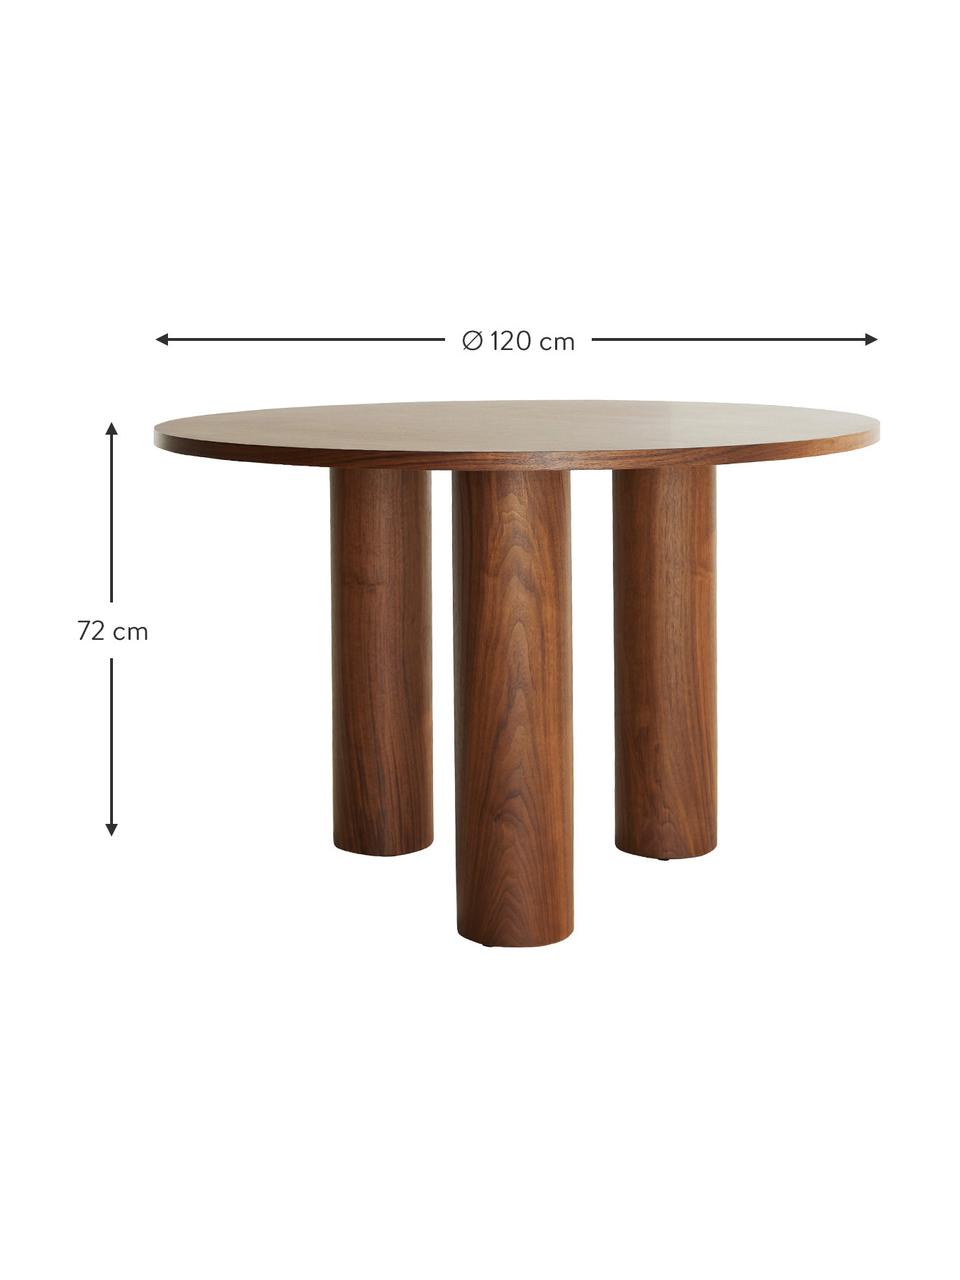 Runder Tisch Colette in Walnuss, Ø 120 cm, Mitteldichte Holzfaserplatte (MDF), mit Walnussholzfurnier, Holz, Ø 120 x H 72 cm